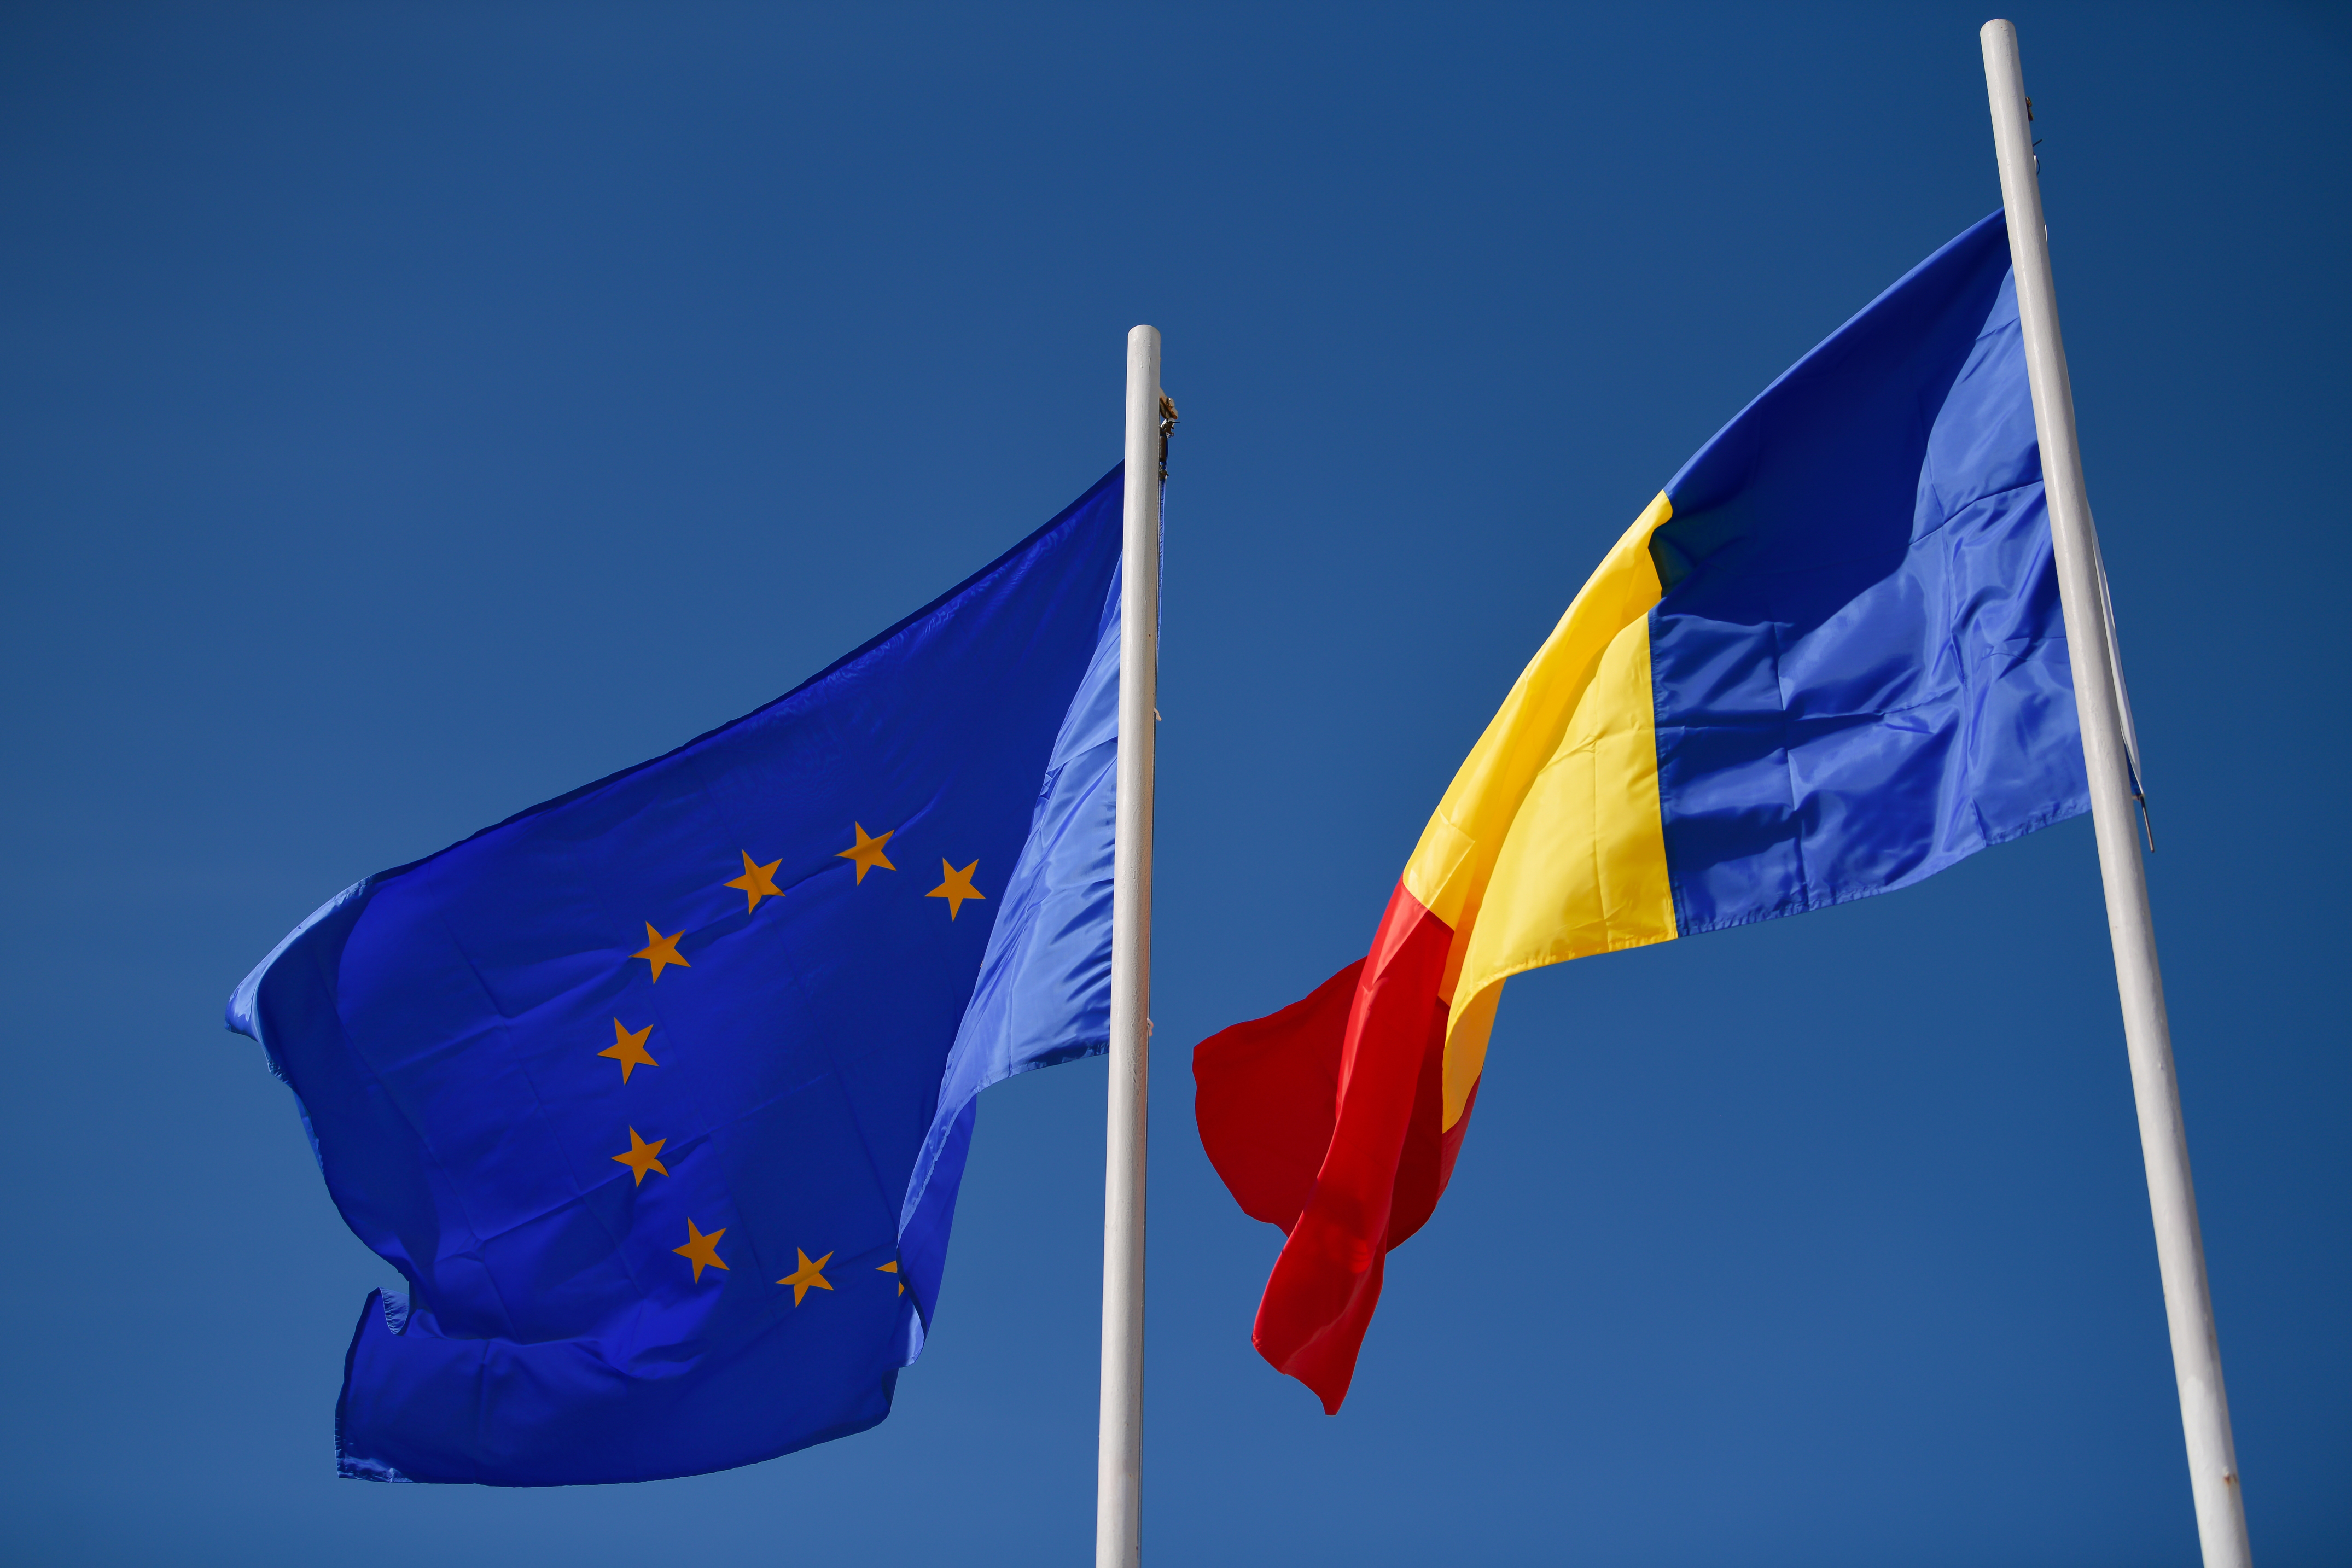 Румынское гражданство в составе Евросоюза